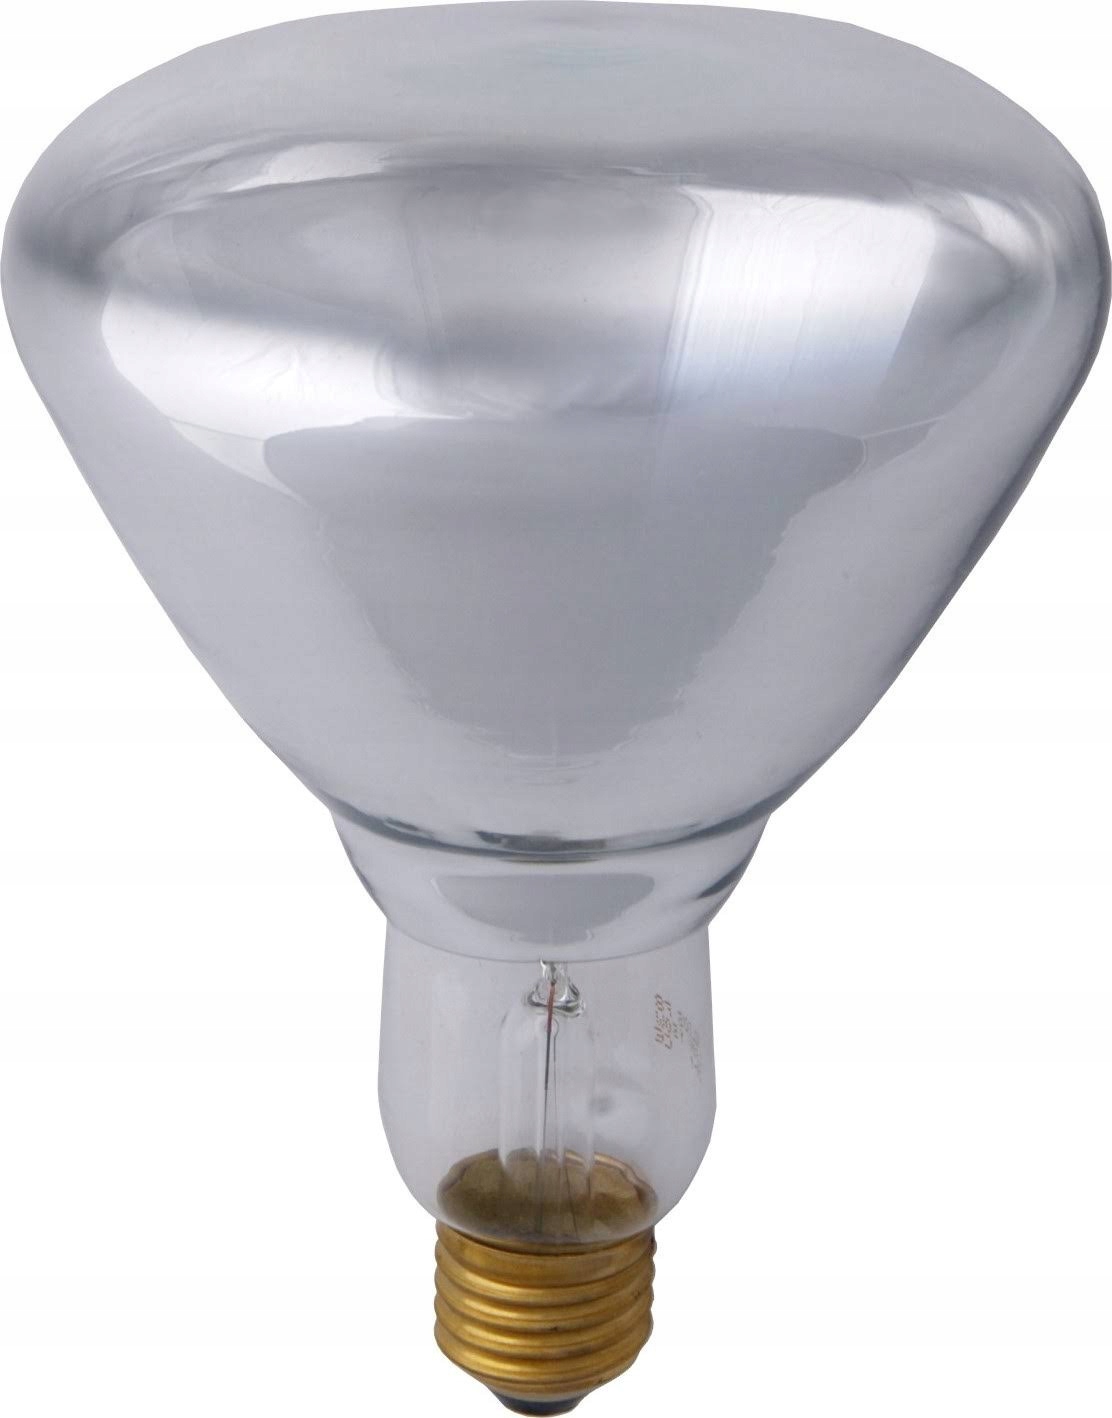 Лампочка для обогрева. Лампа инфракрасная Lightbest Erk r125 175w. ИК лампа 175 w. Инфракрасная лампа 100 Вт. Тепловая лампа на 250 Вт.